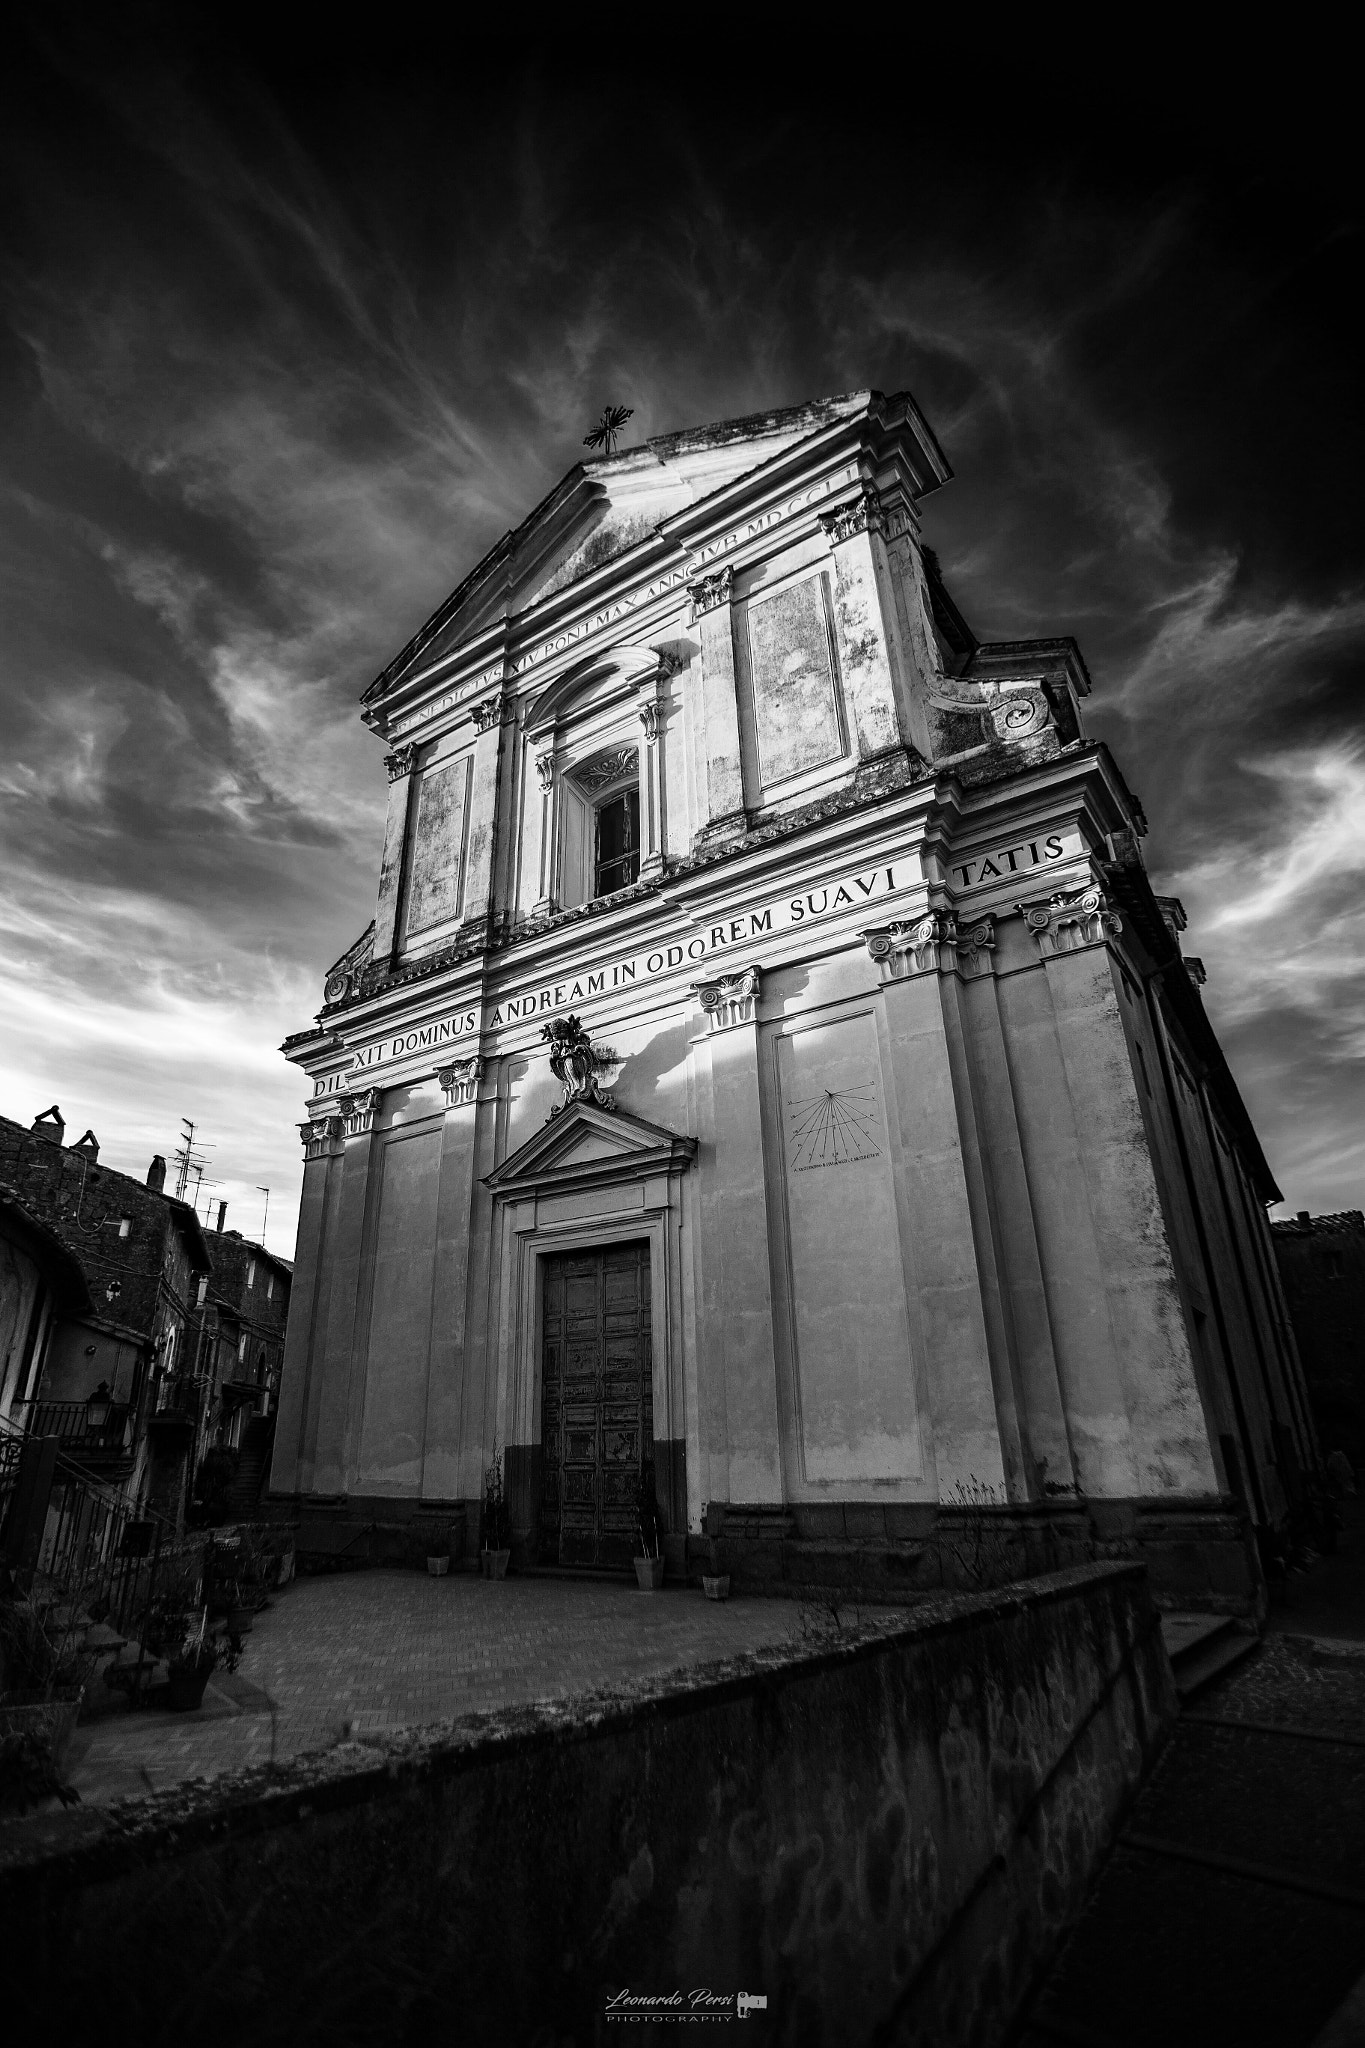 Canon EOS 6D sample photo. Chiesa di sant andrea,vallerano (vt). photography